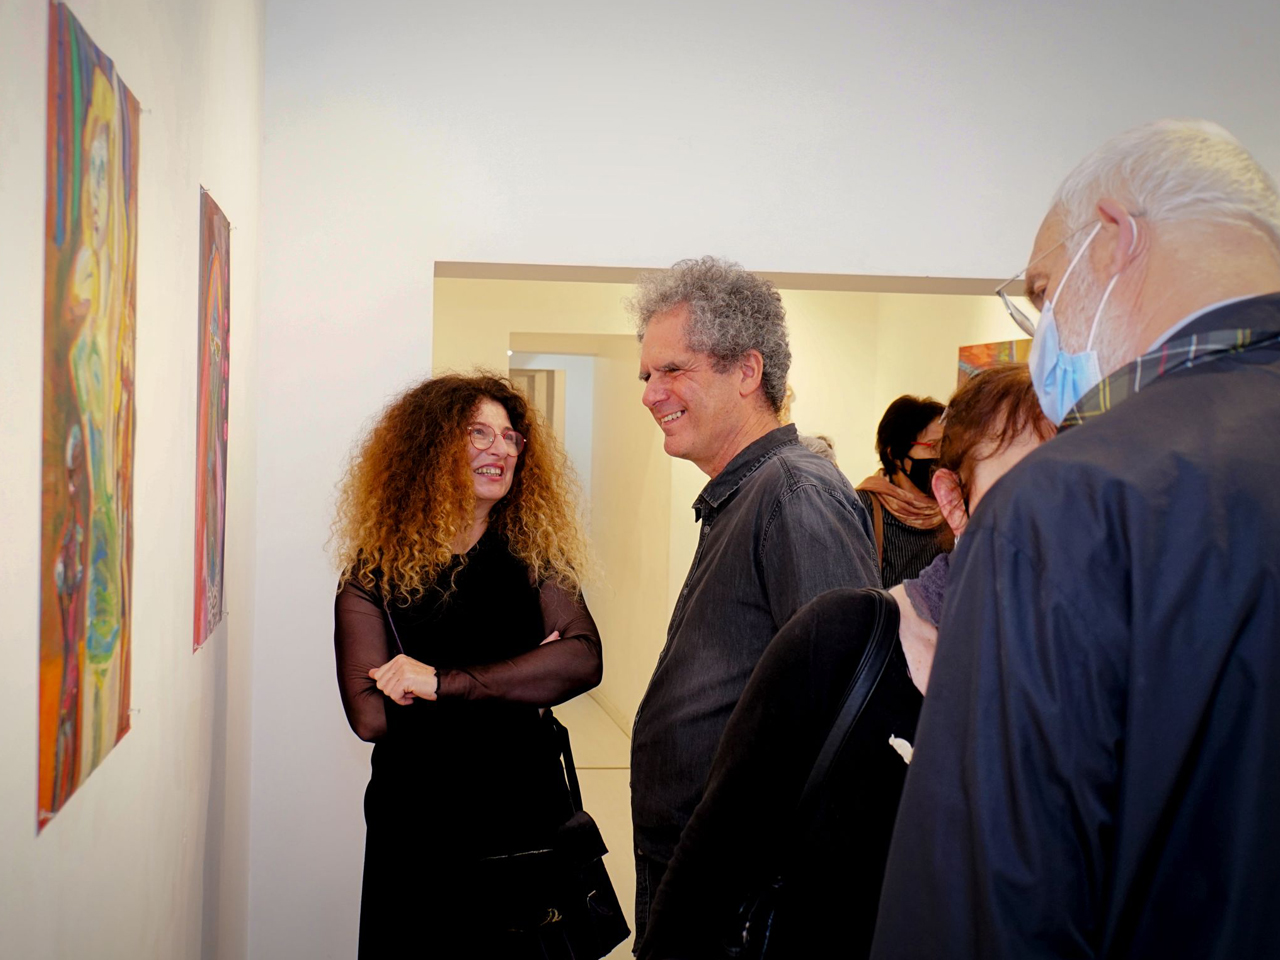 דינה בליך, פתיחת התערוכה הלבשה תחתונה, גלריה אגריפס 12, צילום אלכס זגרבה